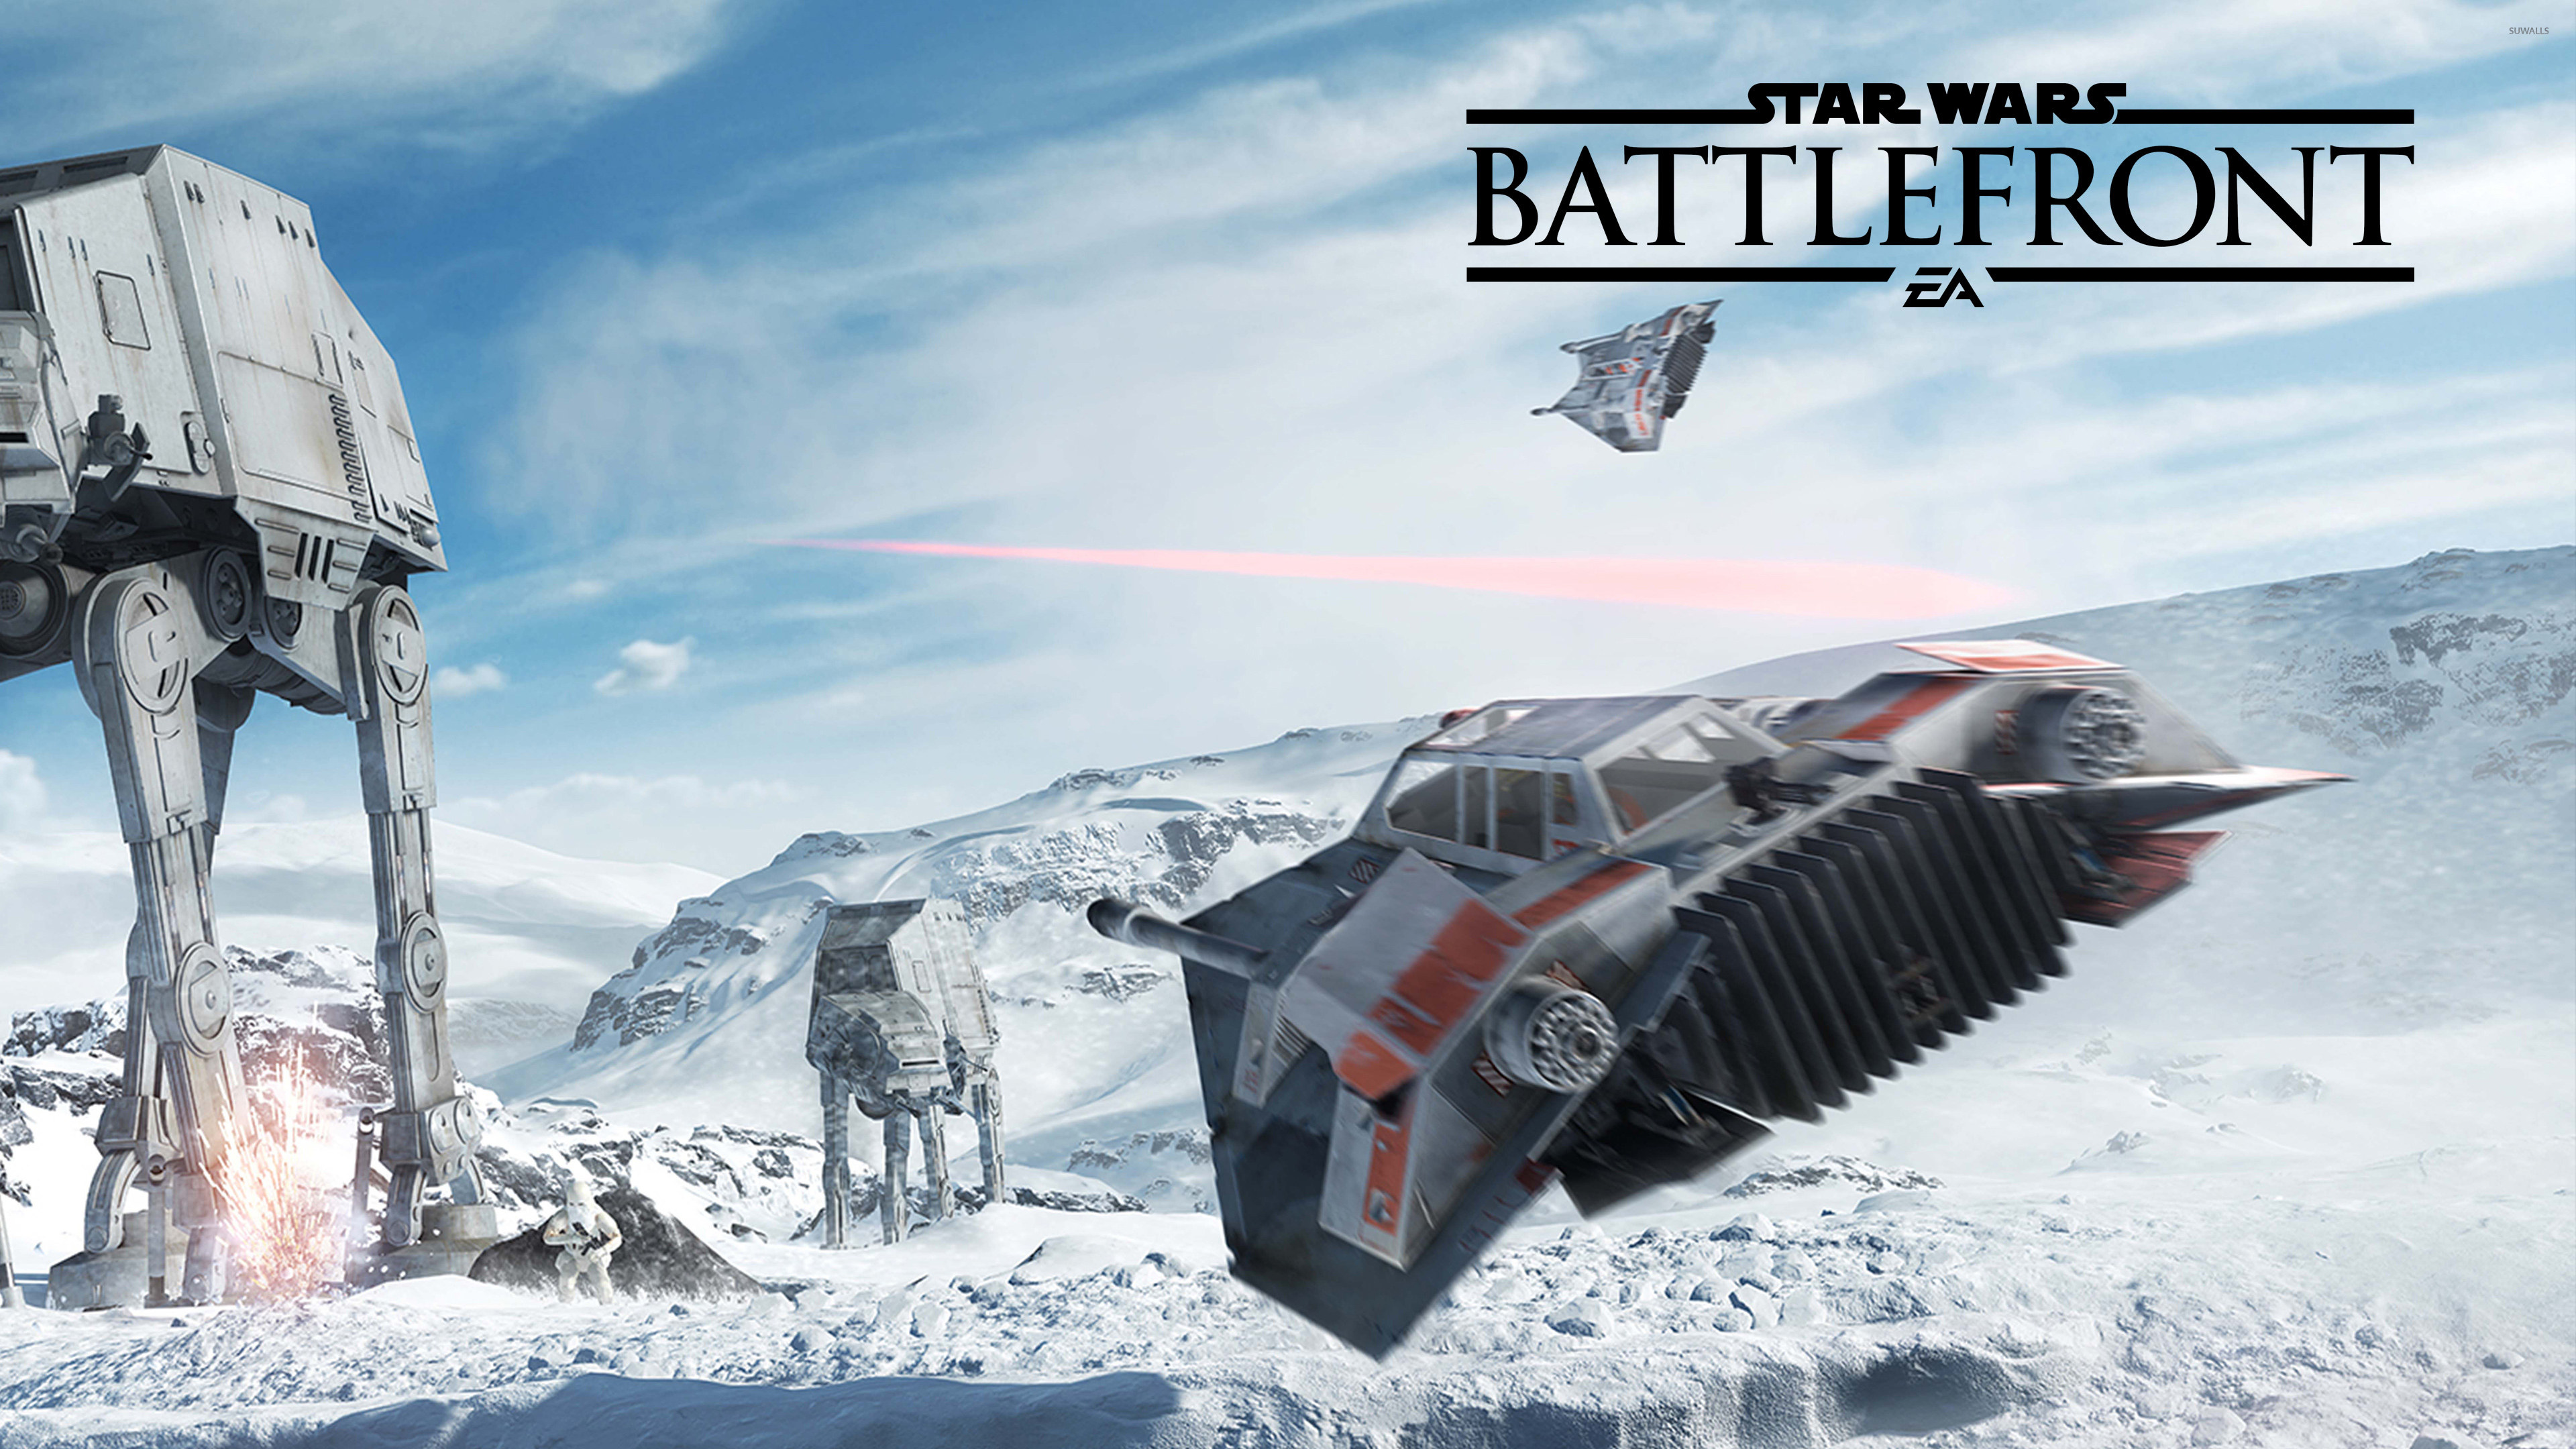 Snowspeeder Flying In Star Wars Battlefront Wallpaper